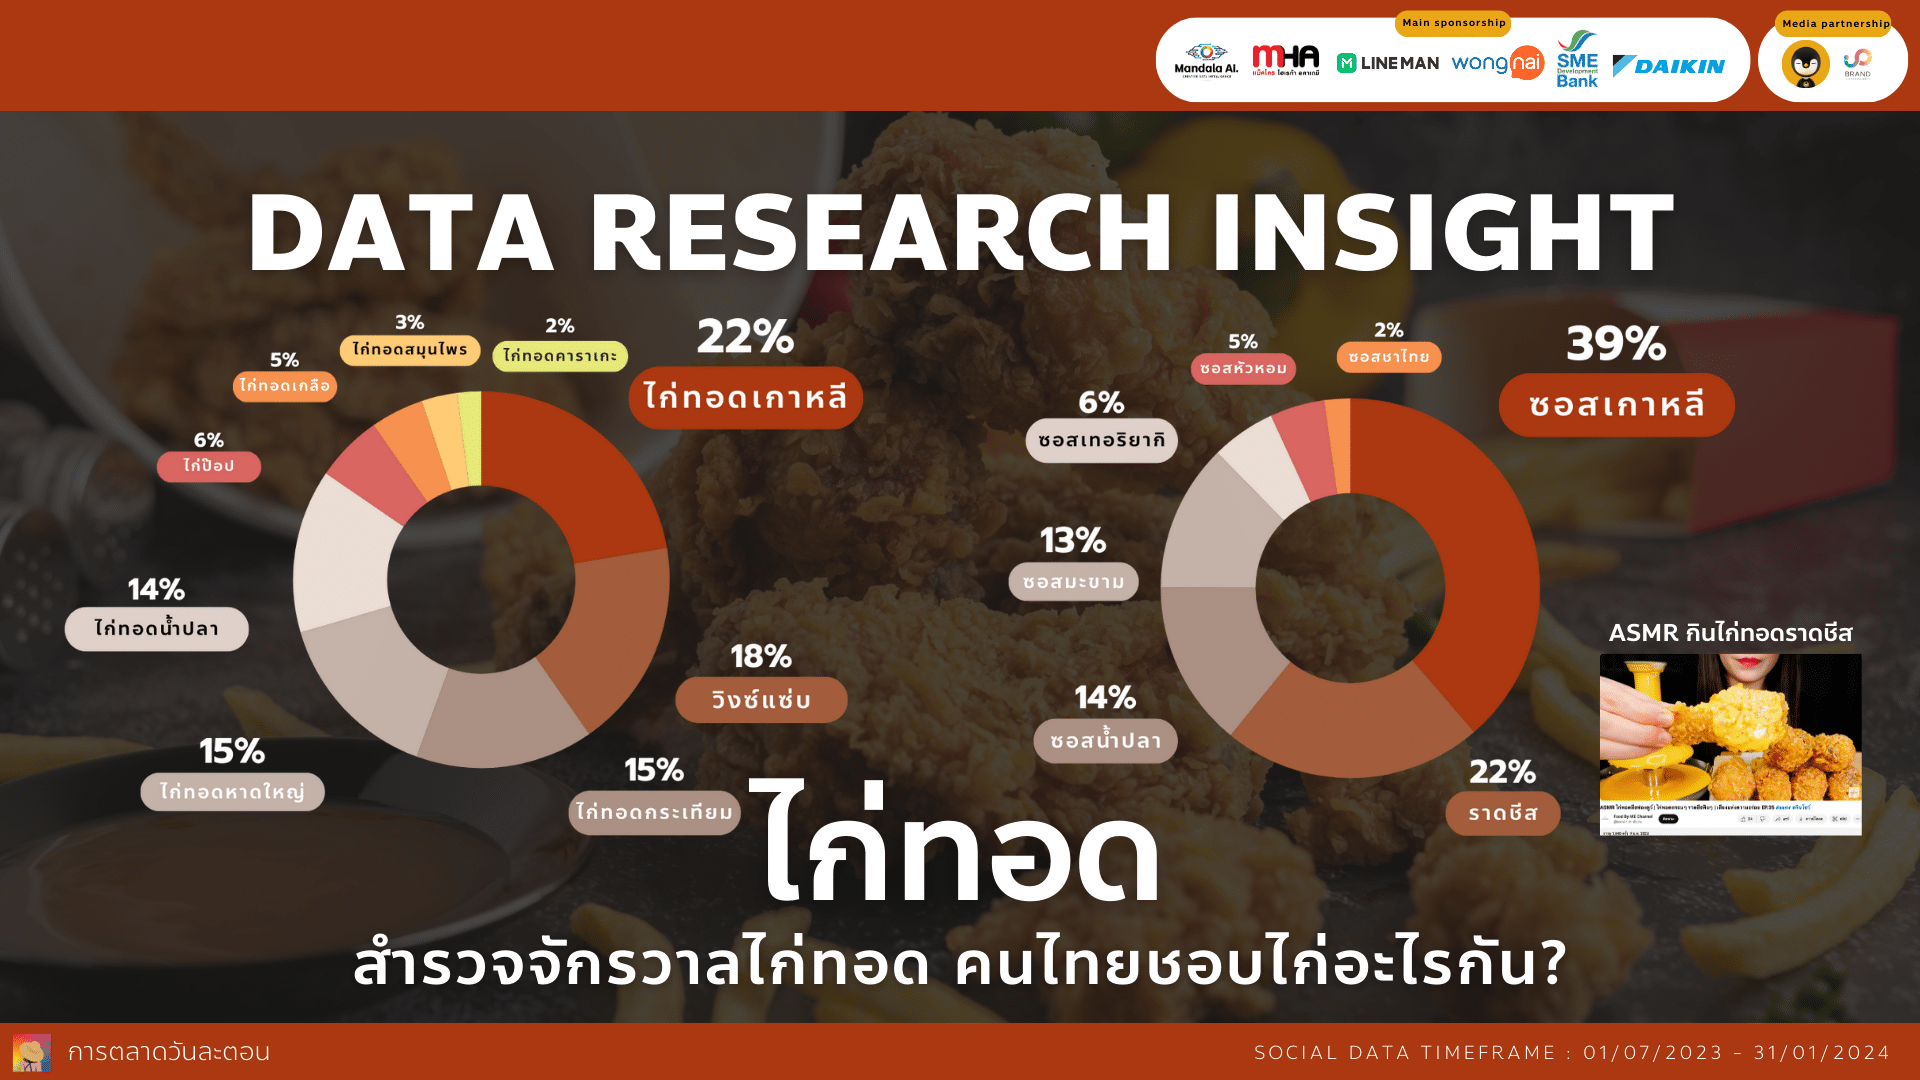 Data Research Insight สำรวจจักรวาลไก่ทอด คนไทยชอบไก่อะไรกัน